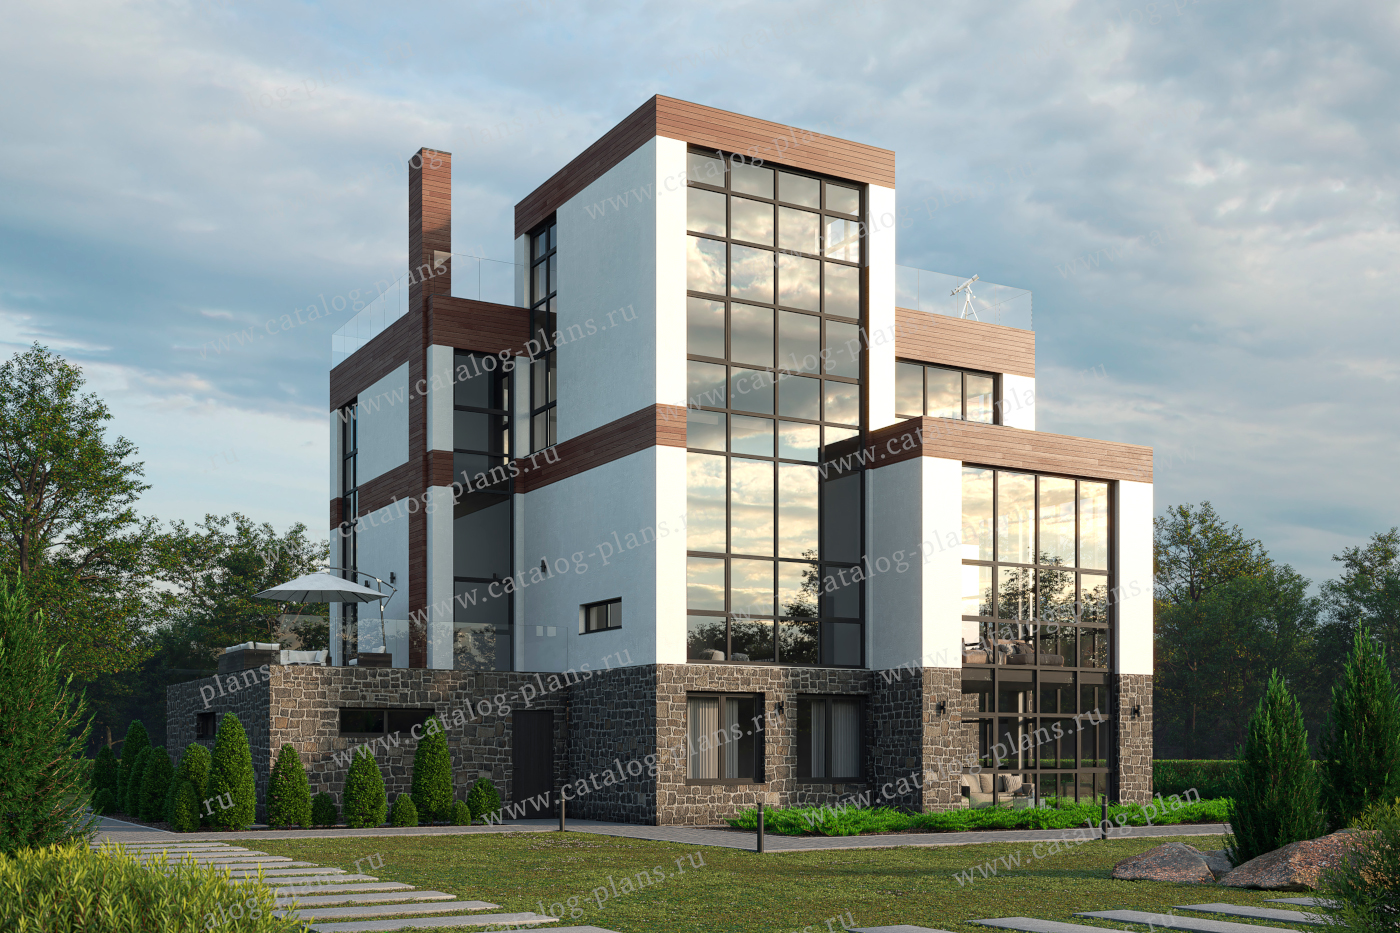 Проект 40-94BGD, жилой дом, материал - газобетонные блоки 400, количество этажей - 3, архитектурный стиль - хай-тек, фундамент - монолитный ленточный ж/б